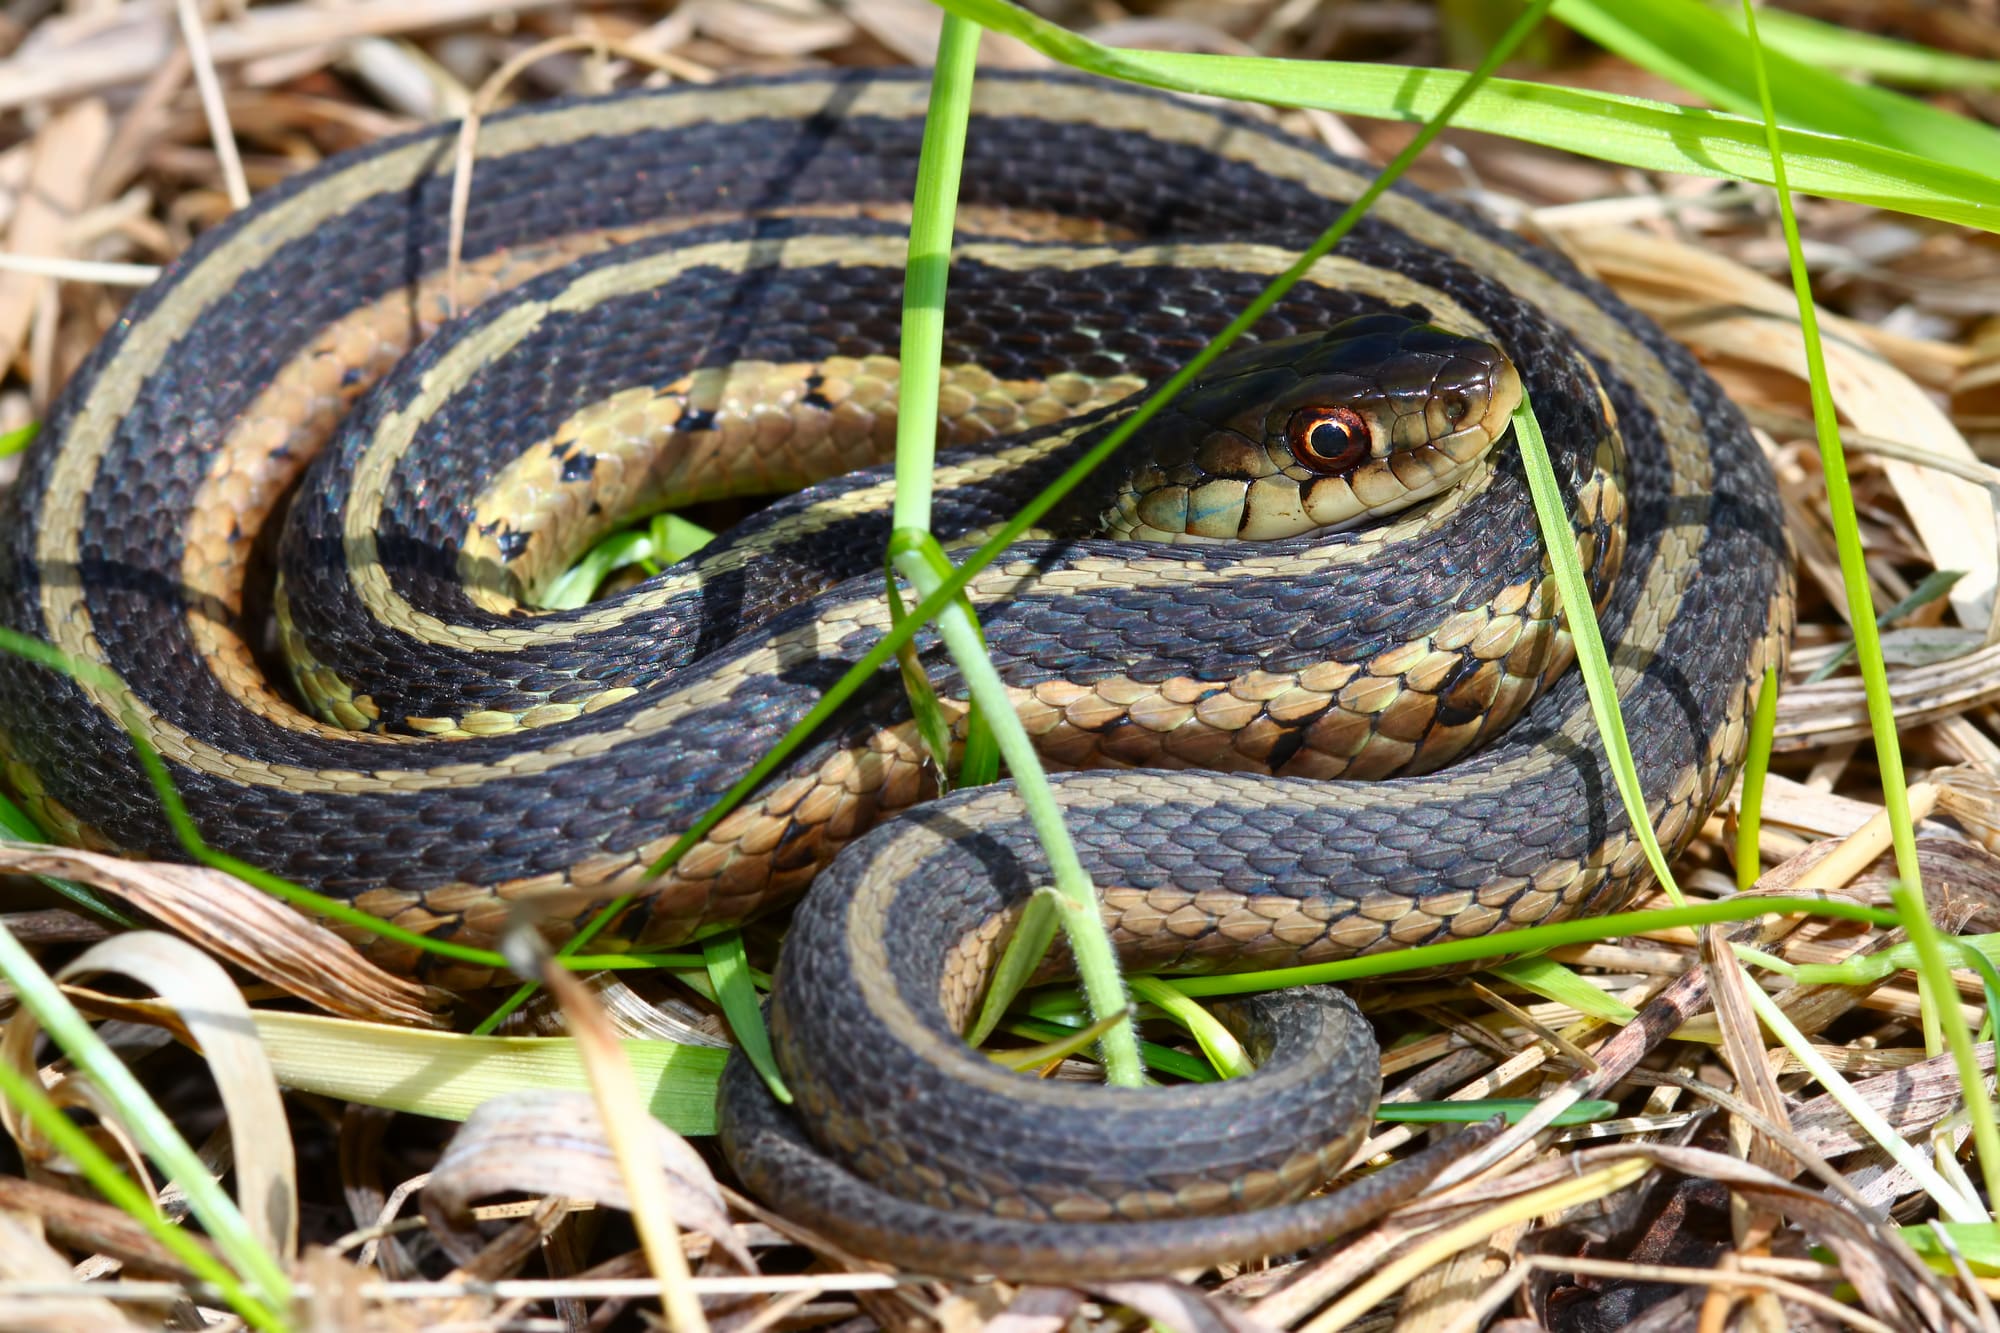 Garter Snake basking on the grass